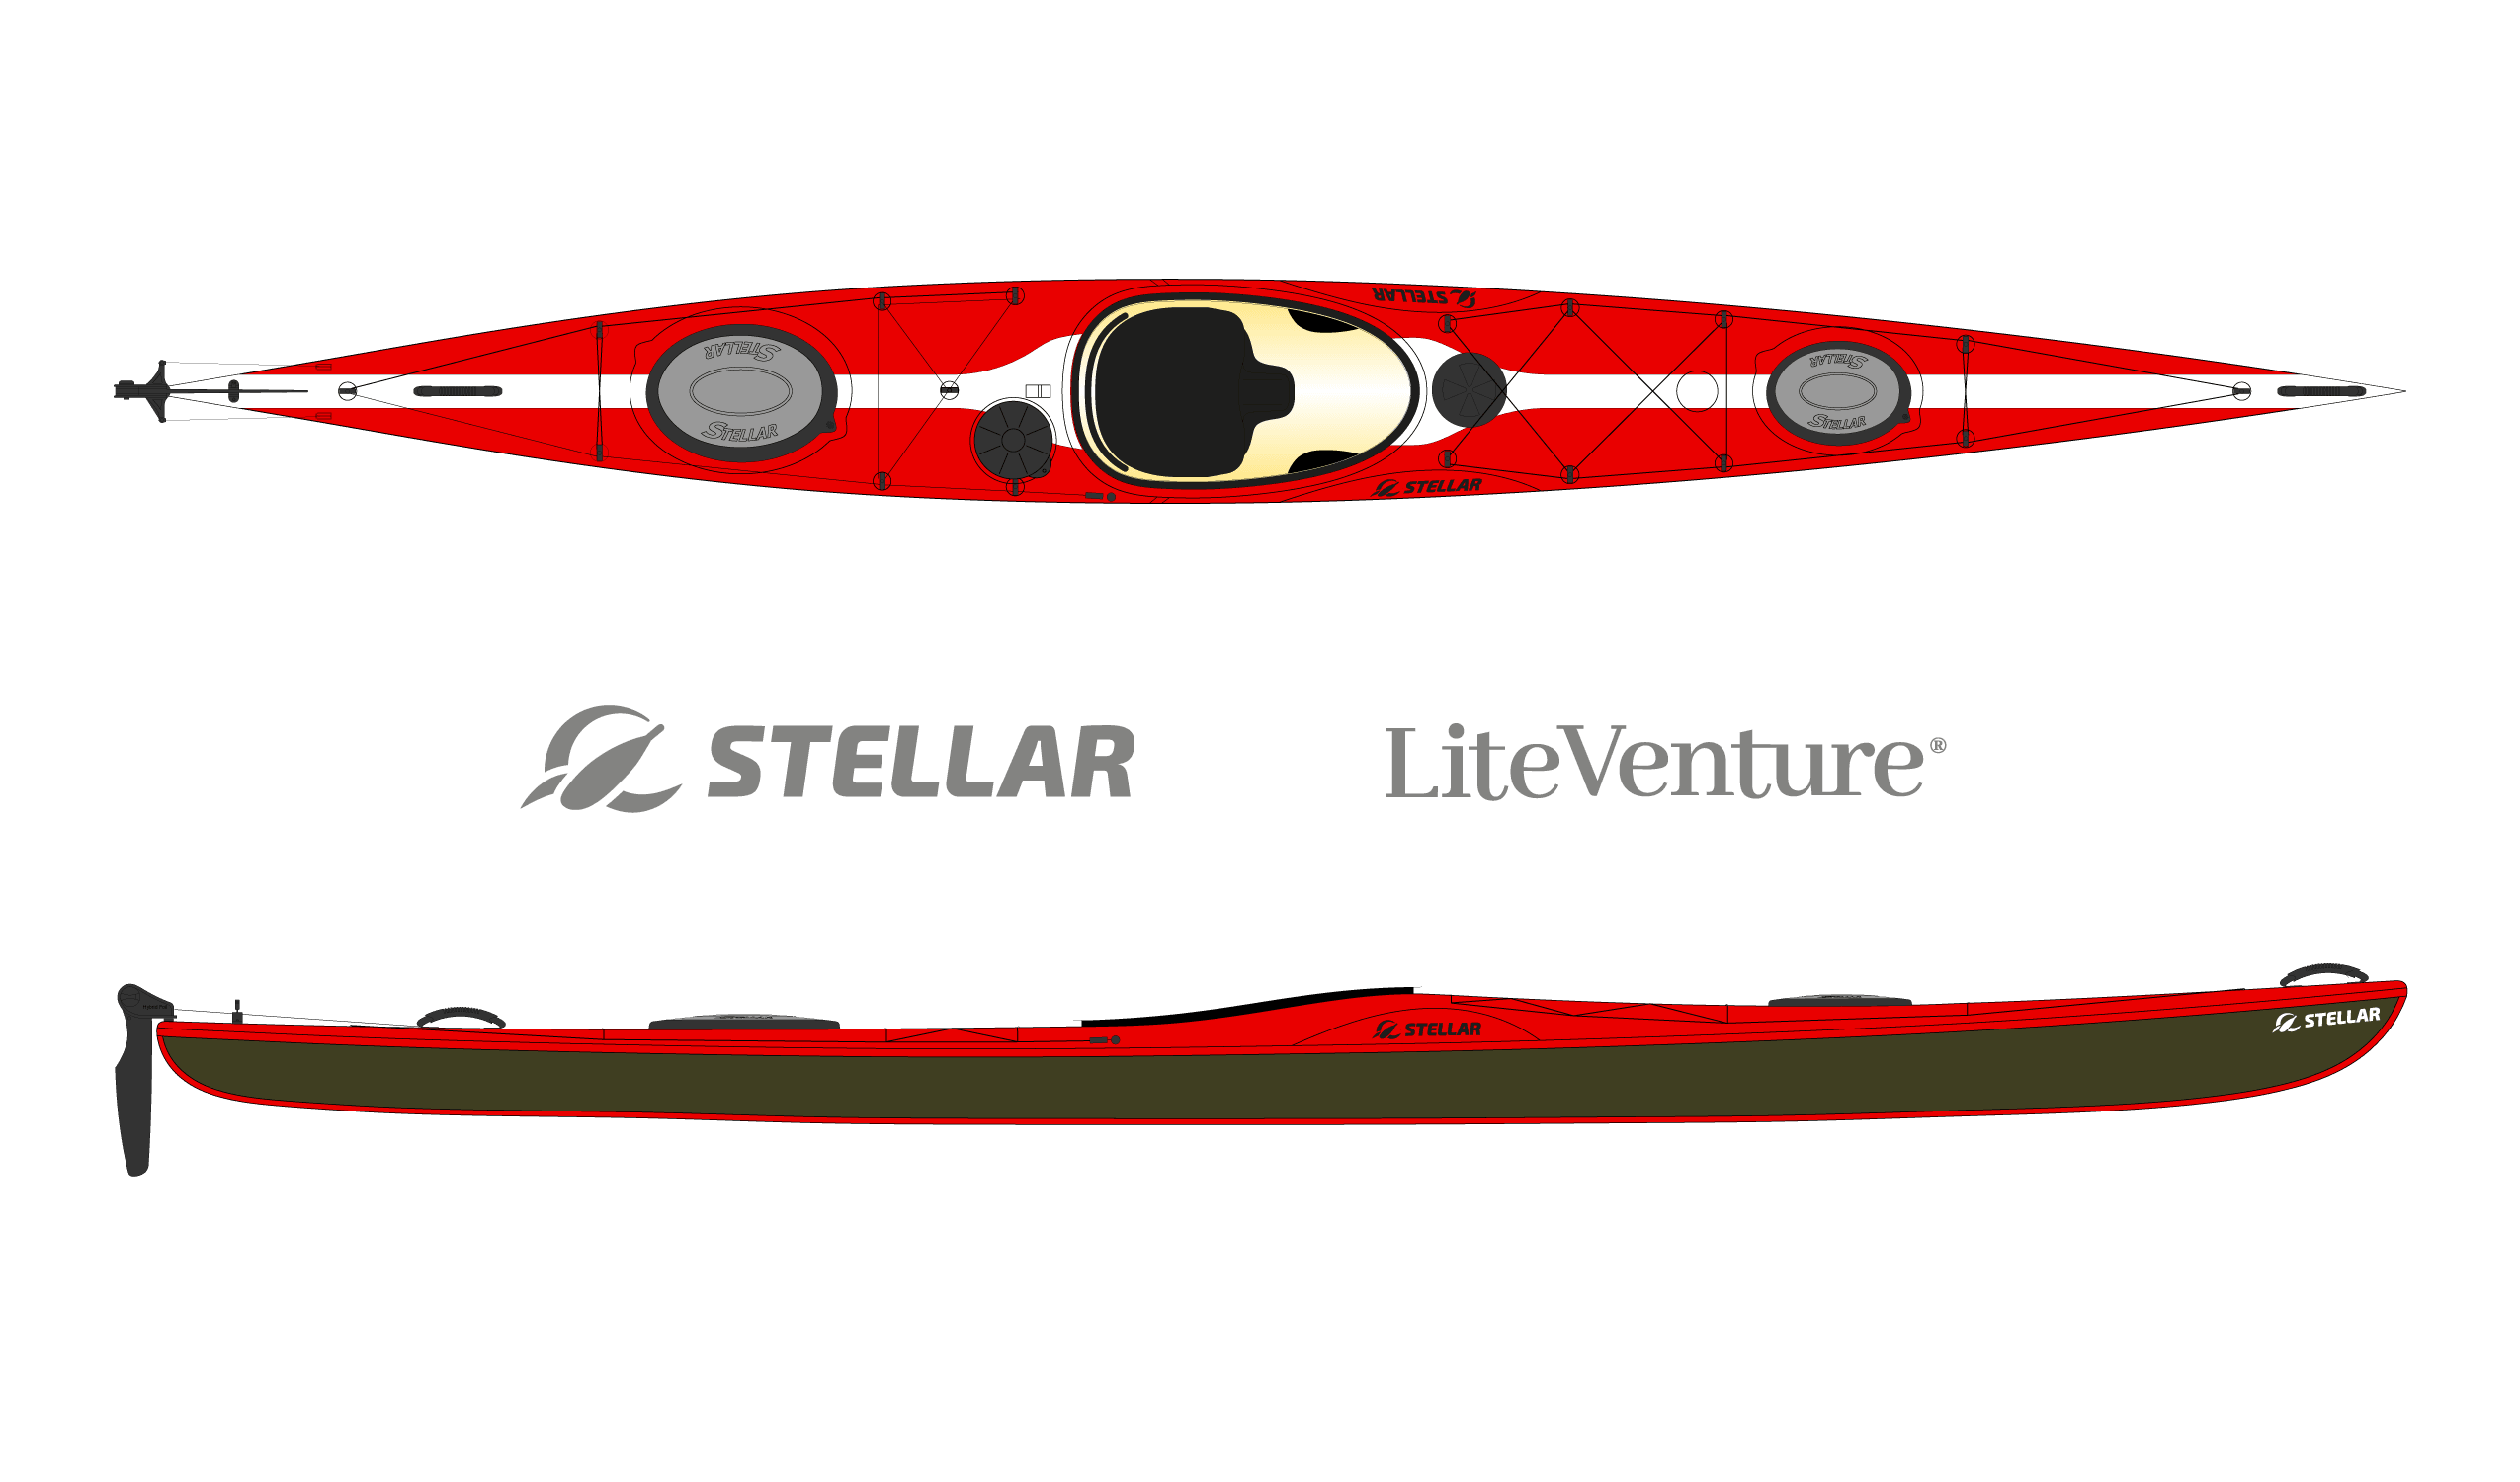 Produktbild von Kajak " S18 Expedition Multisport-rot weiß " der Marke STELLAR Lightweight für 3490.00 €. Erhältlich online bei Lite Venture ( www.liteventure.de )